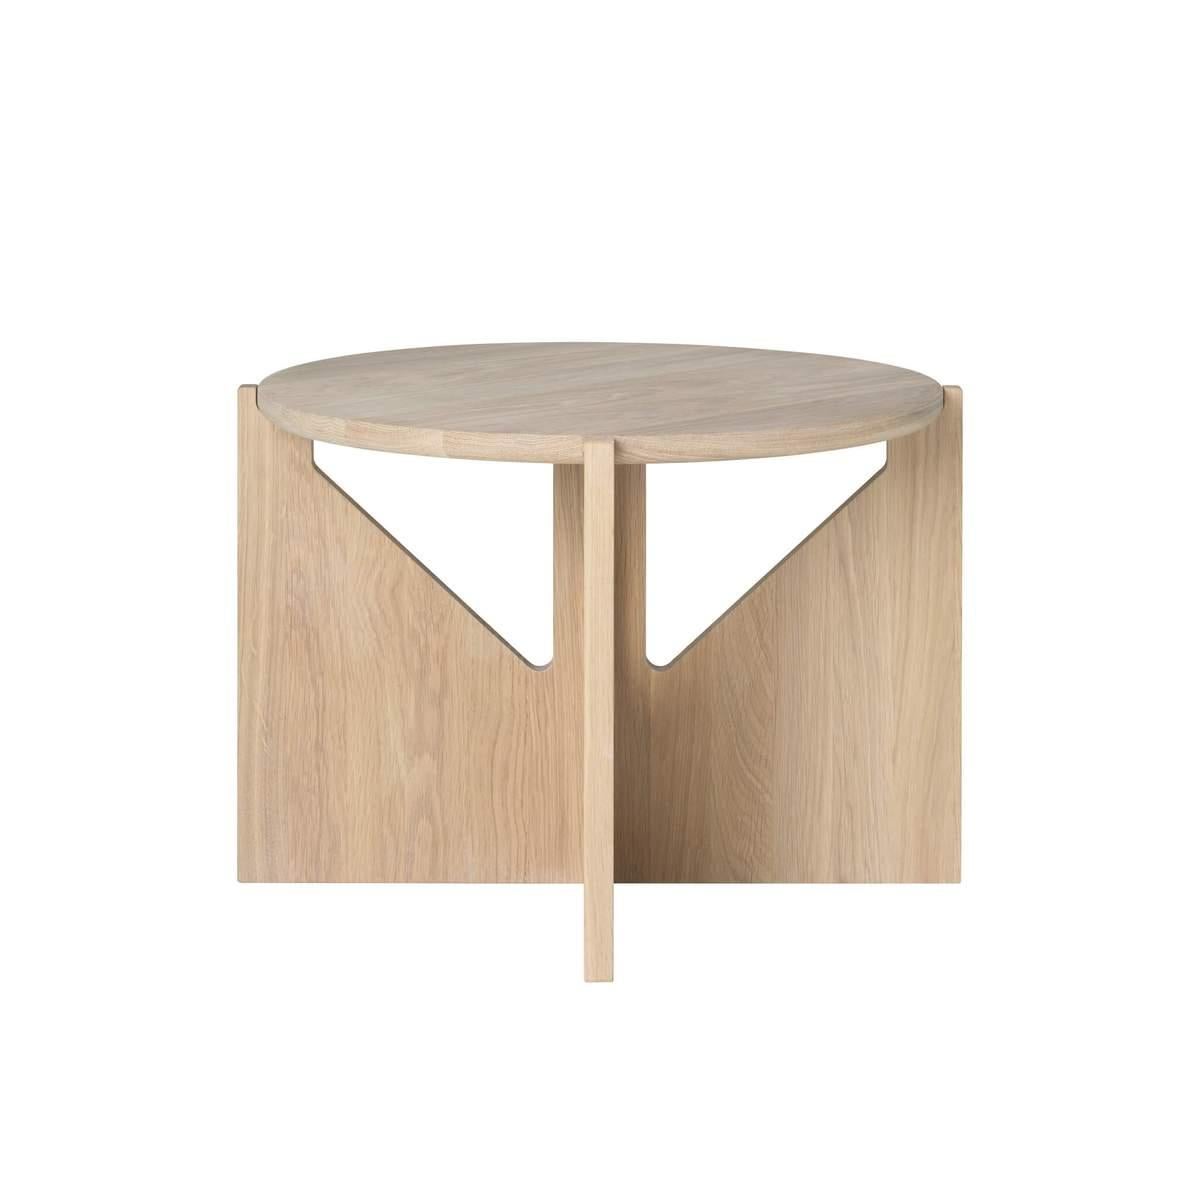 Table en chêne par Kristina Dam Studio
Matériaux : Chêne massif avec traitement à l'huile.
Également disponible dans d'autres couleurs et tailles. 
Dimensions : 52 x 52 x H 36cm.

Une superbe table basse danoise conçue par Kristina Dam Design